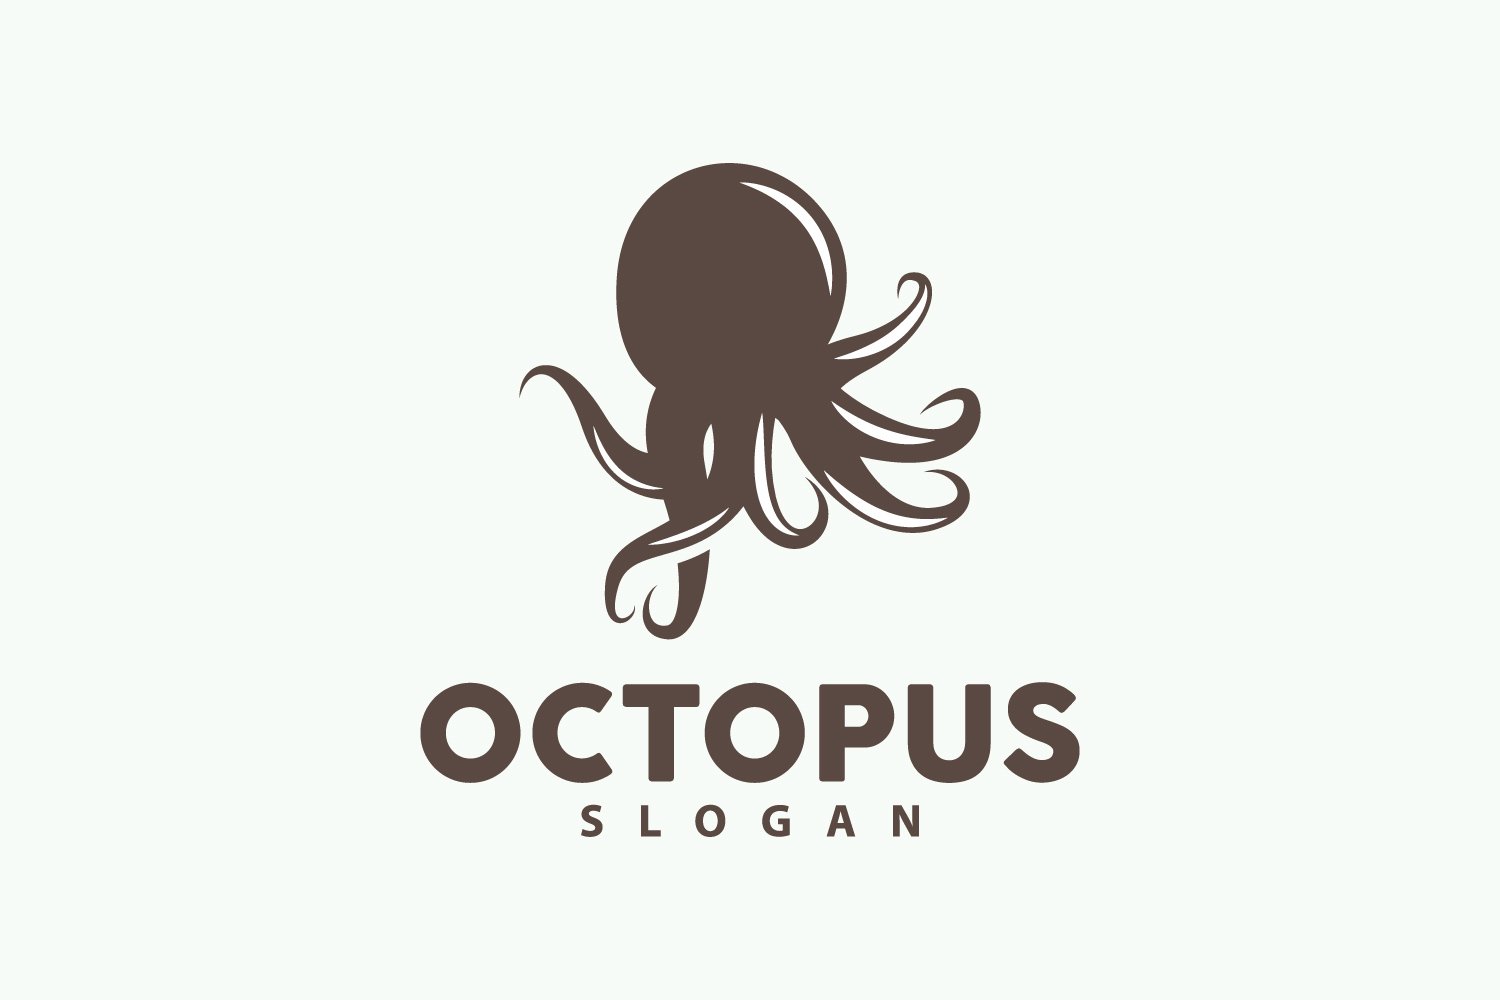 Octopus Logo Old Retro Vintage DesignV13